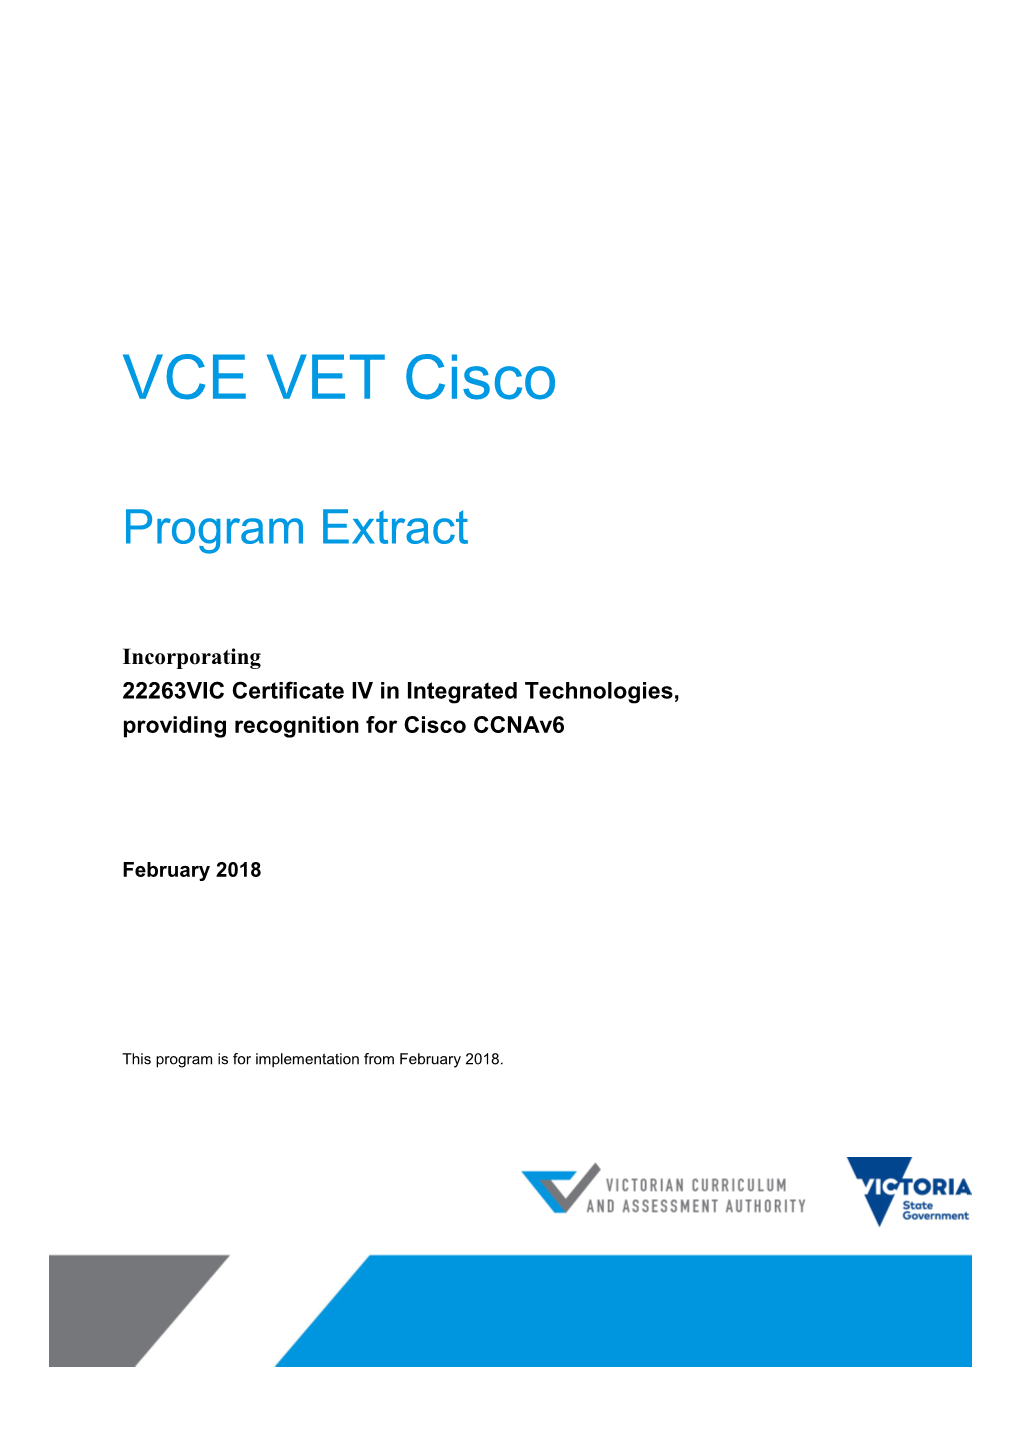 VCE VET Cisco Program Extract